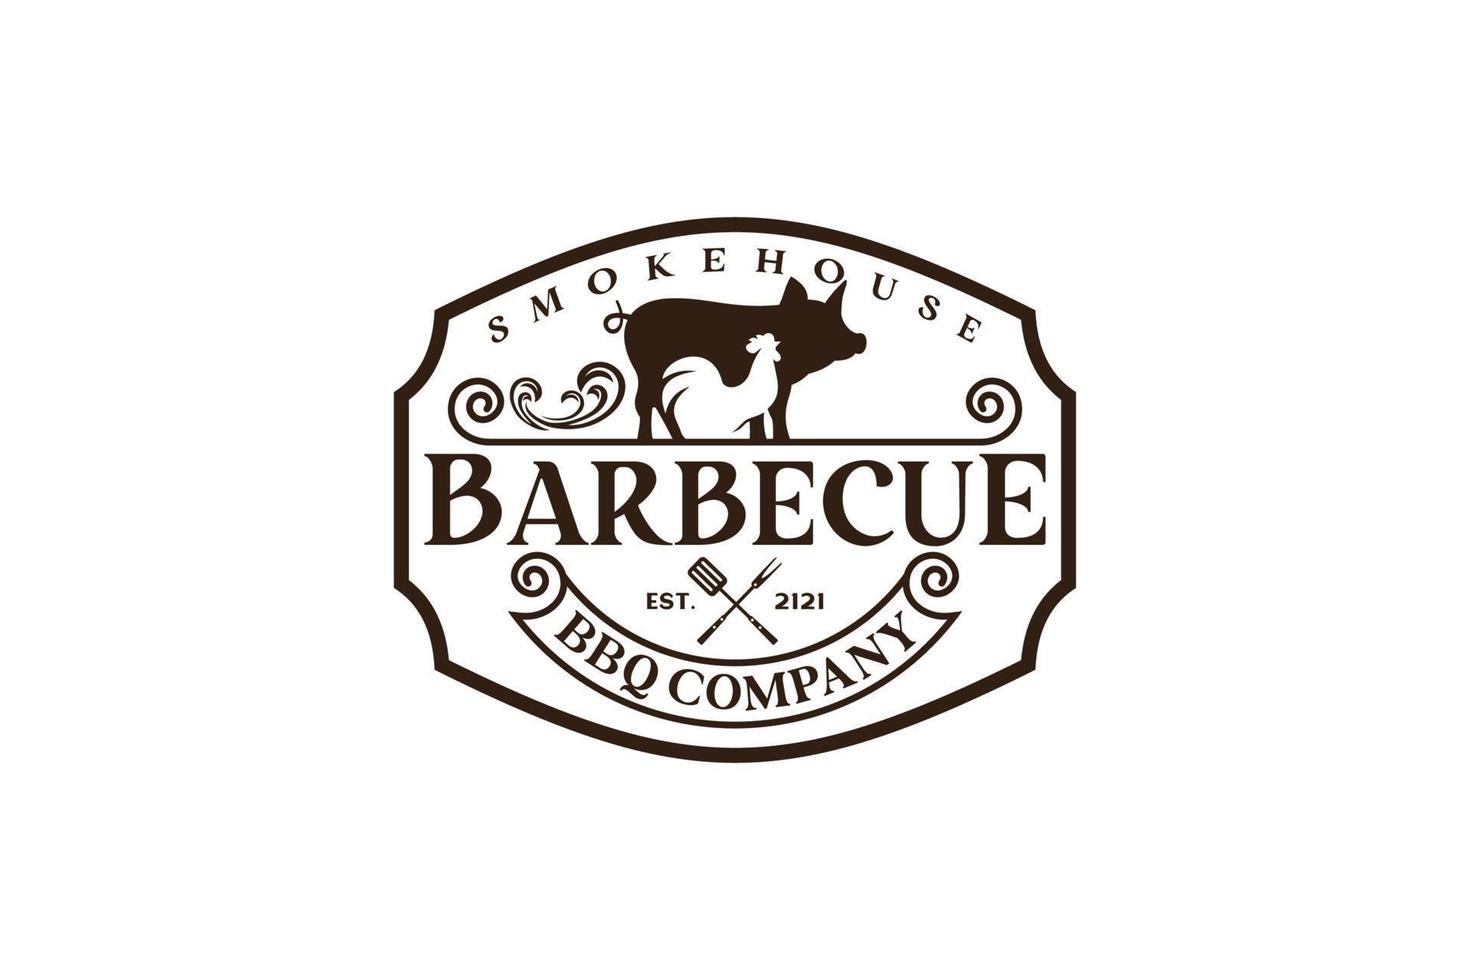 vintage retro rustikaler bbq grill, grill, barbeque label stamp logo design vector